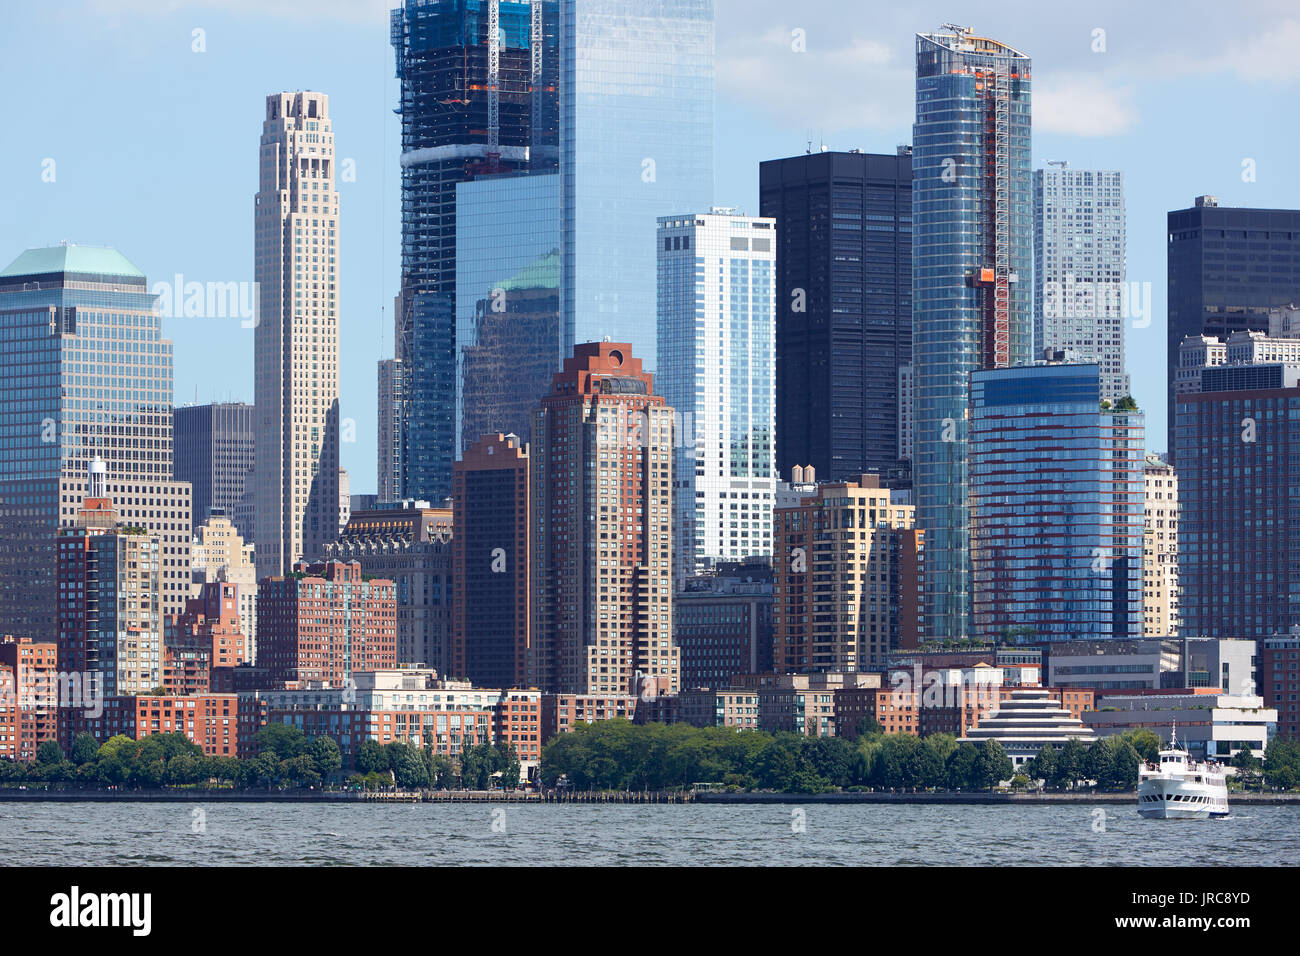 New York City Manhattan vue depuis la rivière Hudson avec gratte-ciel dans une journée ensoleillée Banque D'Images